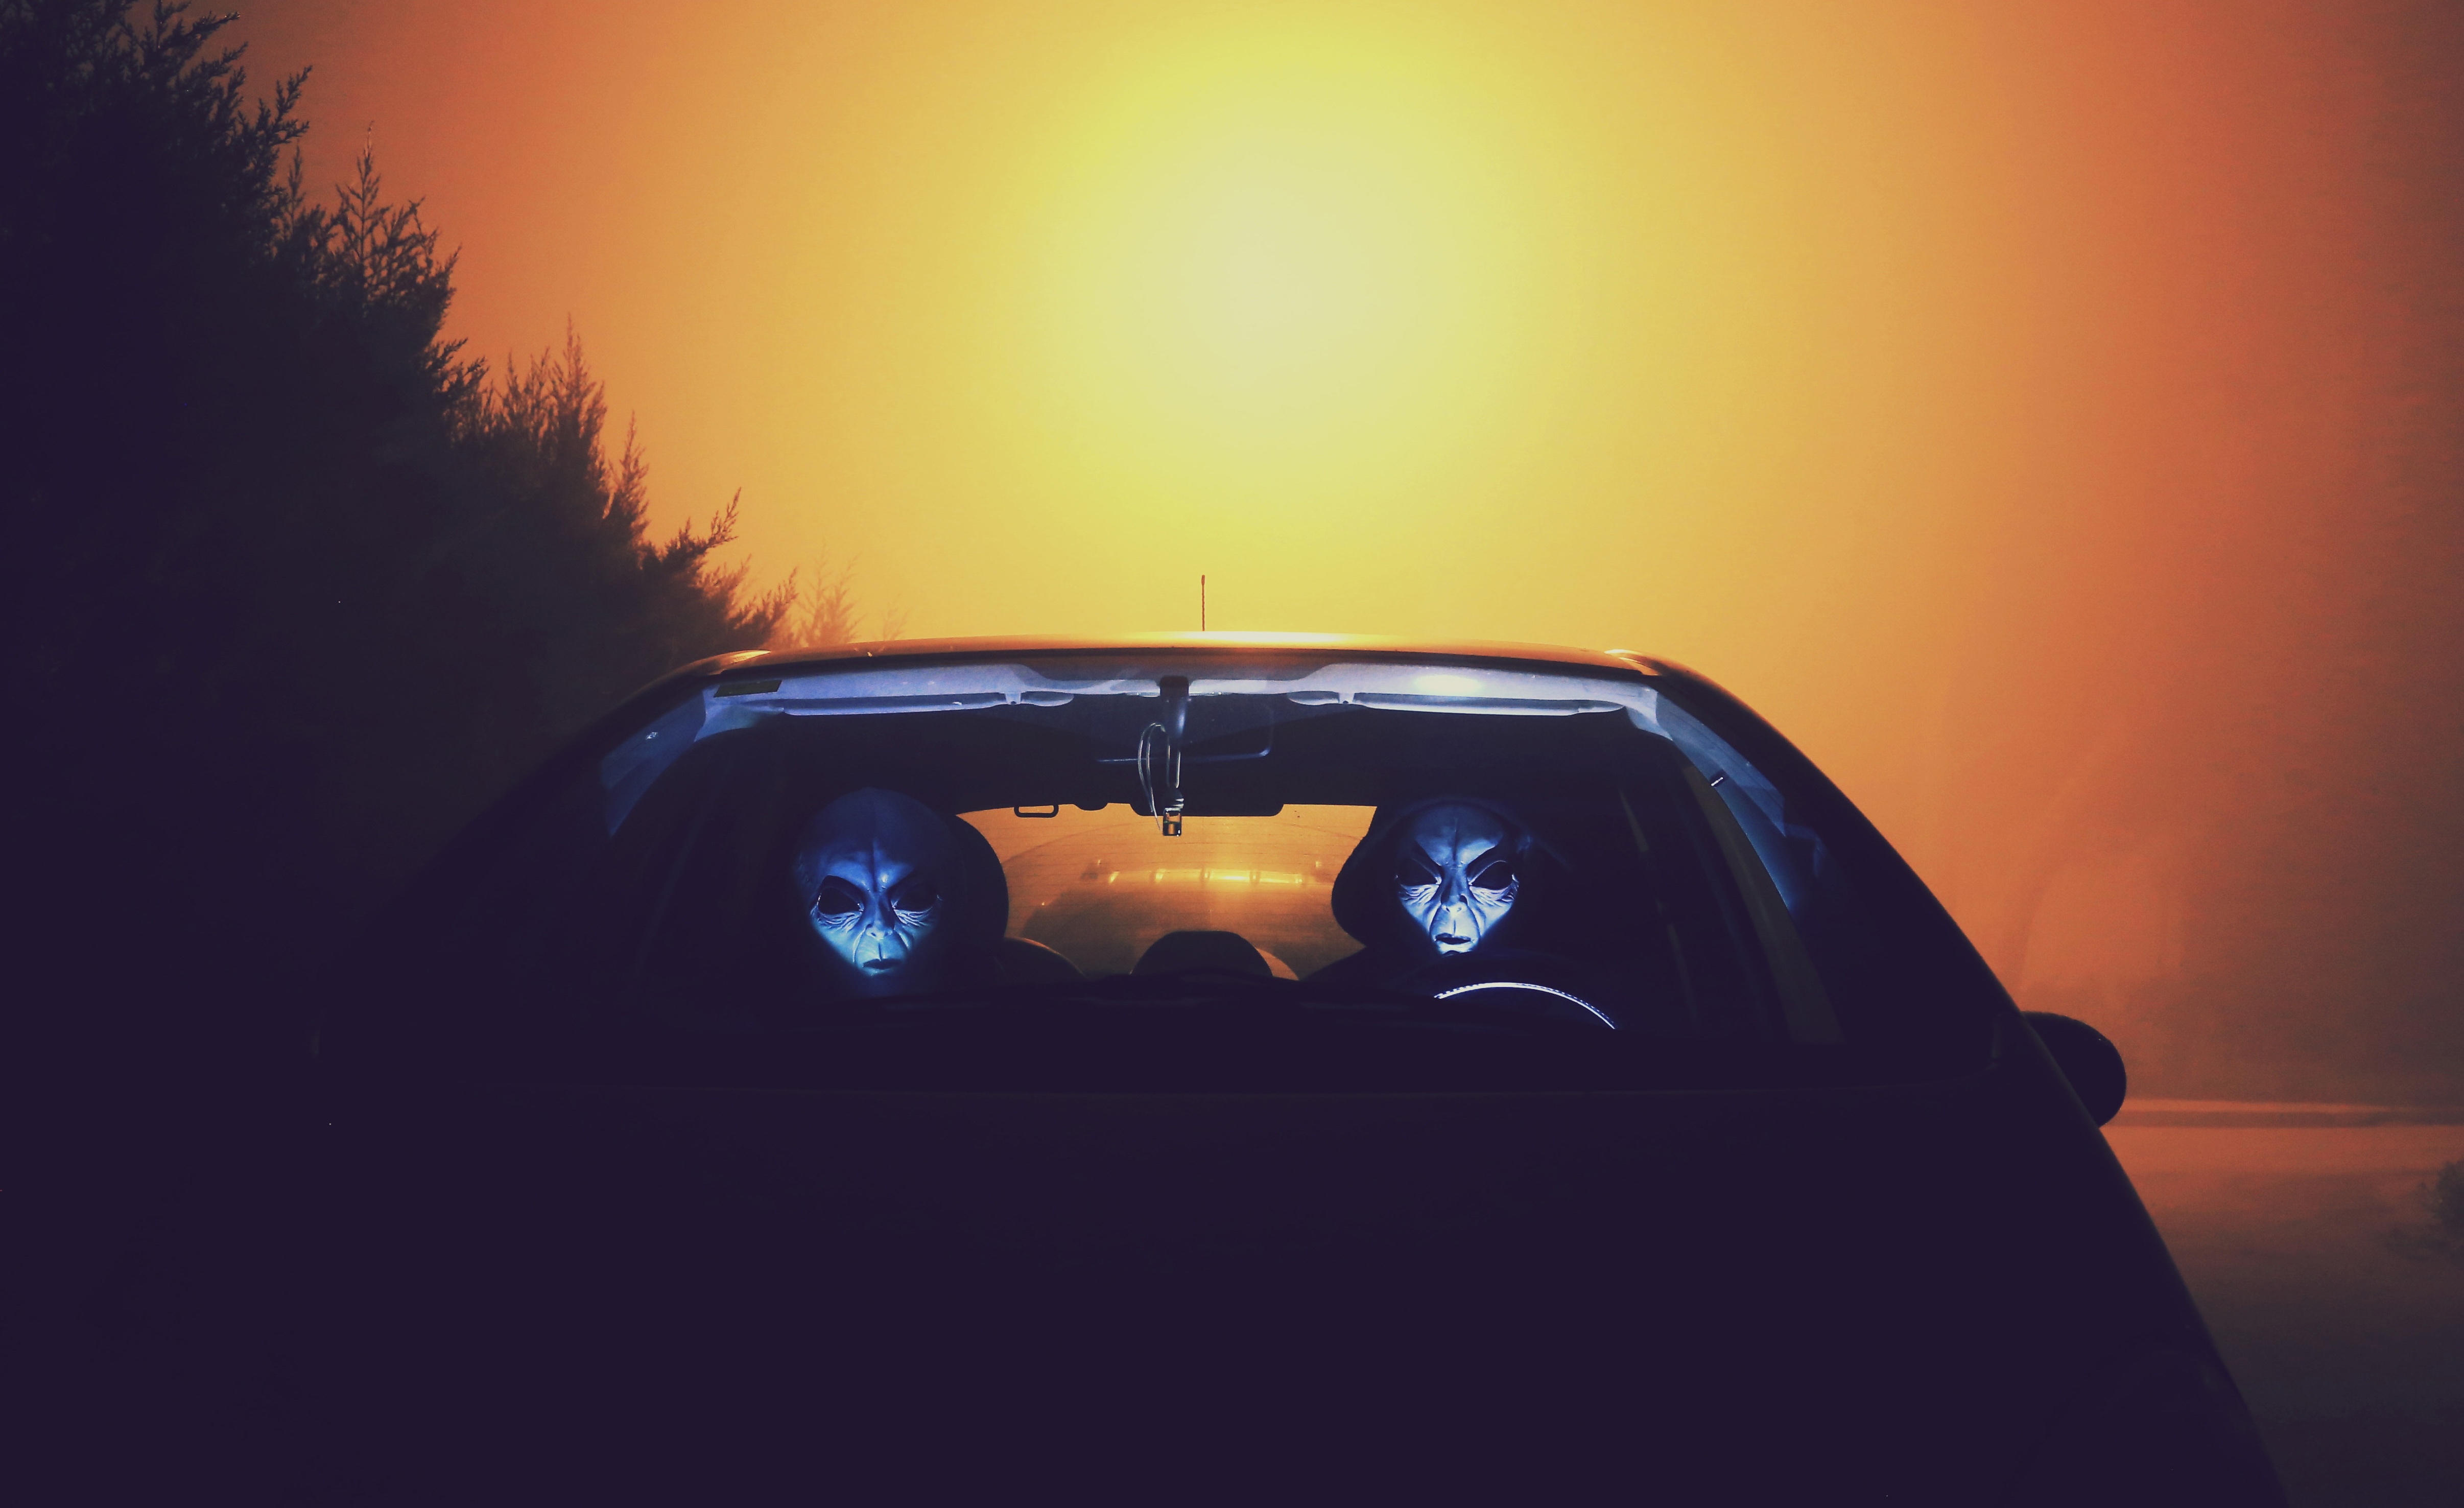 aliens, masks, dark, car HD wallpaper